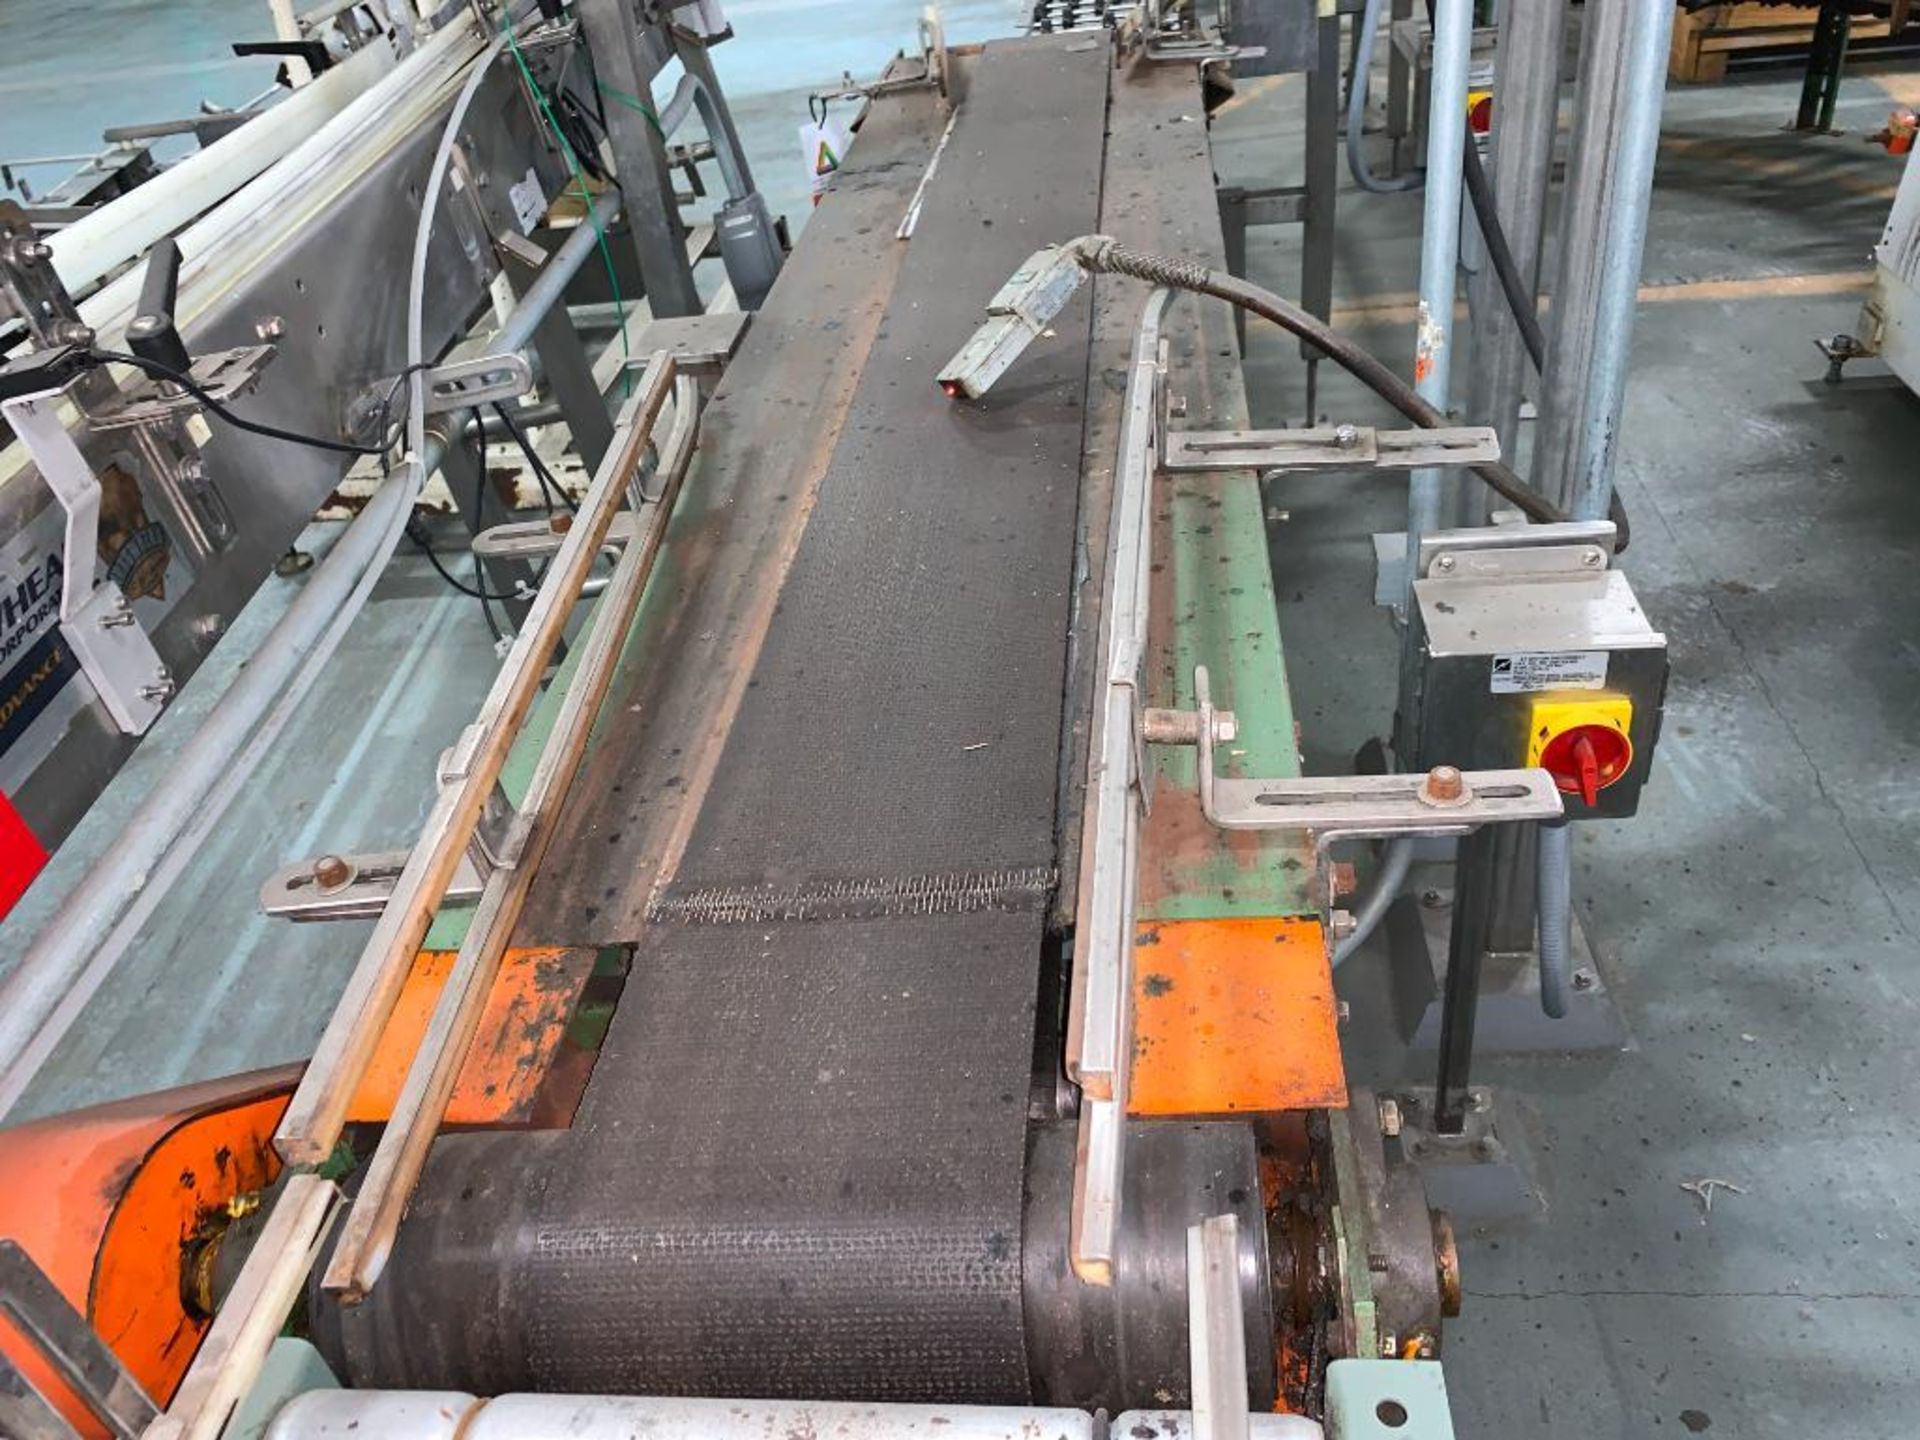 Hytrol rubber belt conveyor 90 in. x 9 in. x 33 in. - Image 4 of 8